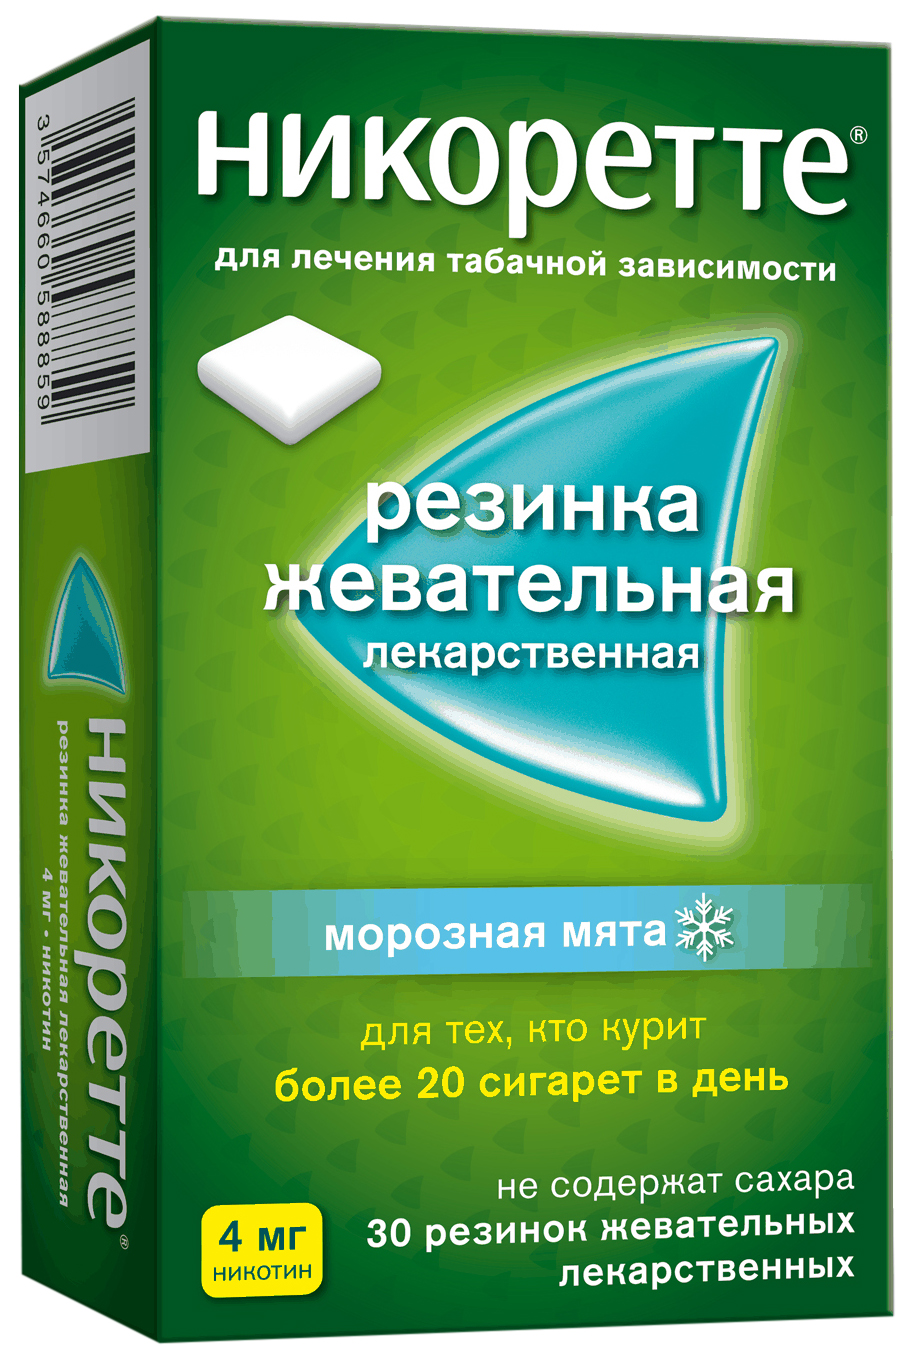 Никоретте морозная мята жевательные резинки 4 мг 30 шт., Johnson & Johnson, Россия  - купить